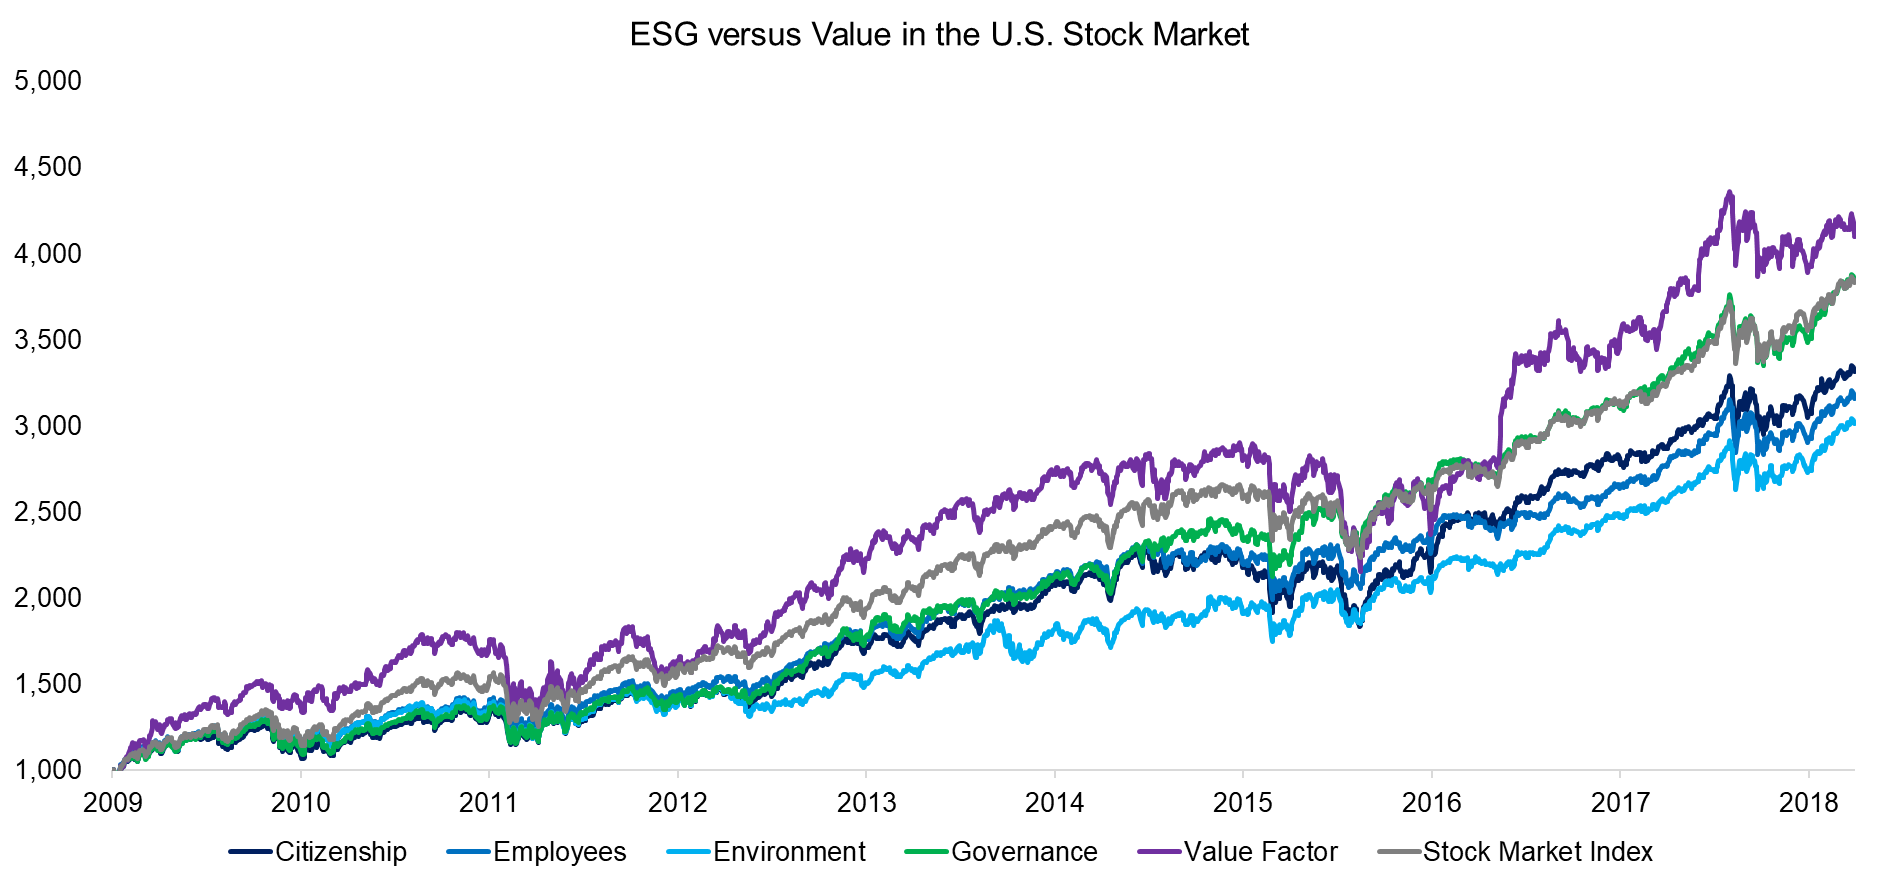 ESG versus Value in the U.S. Stock Market